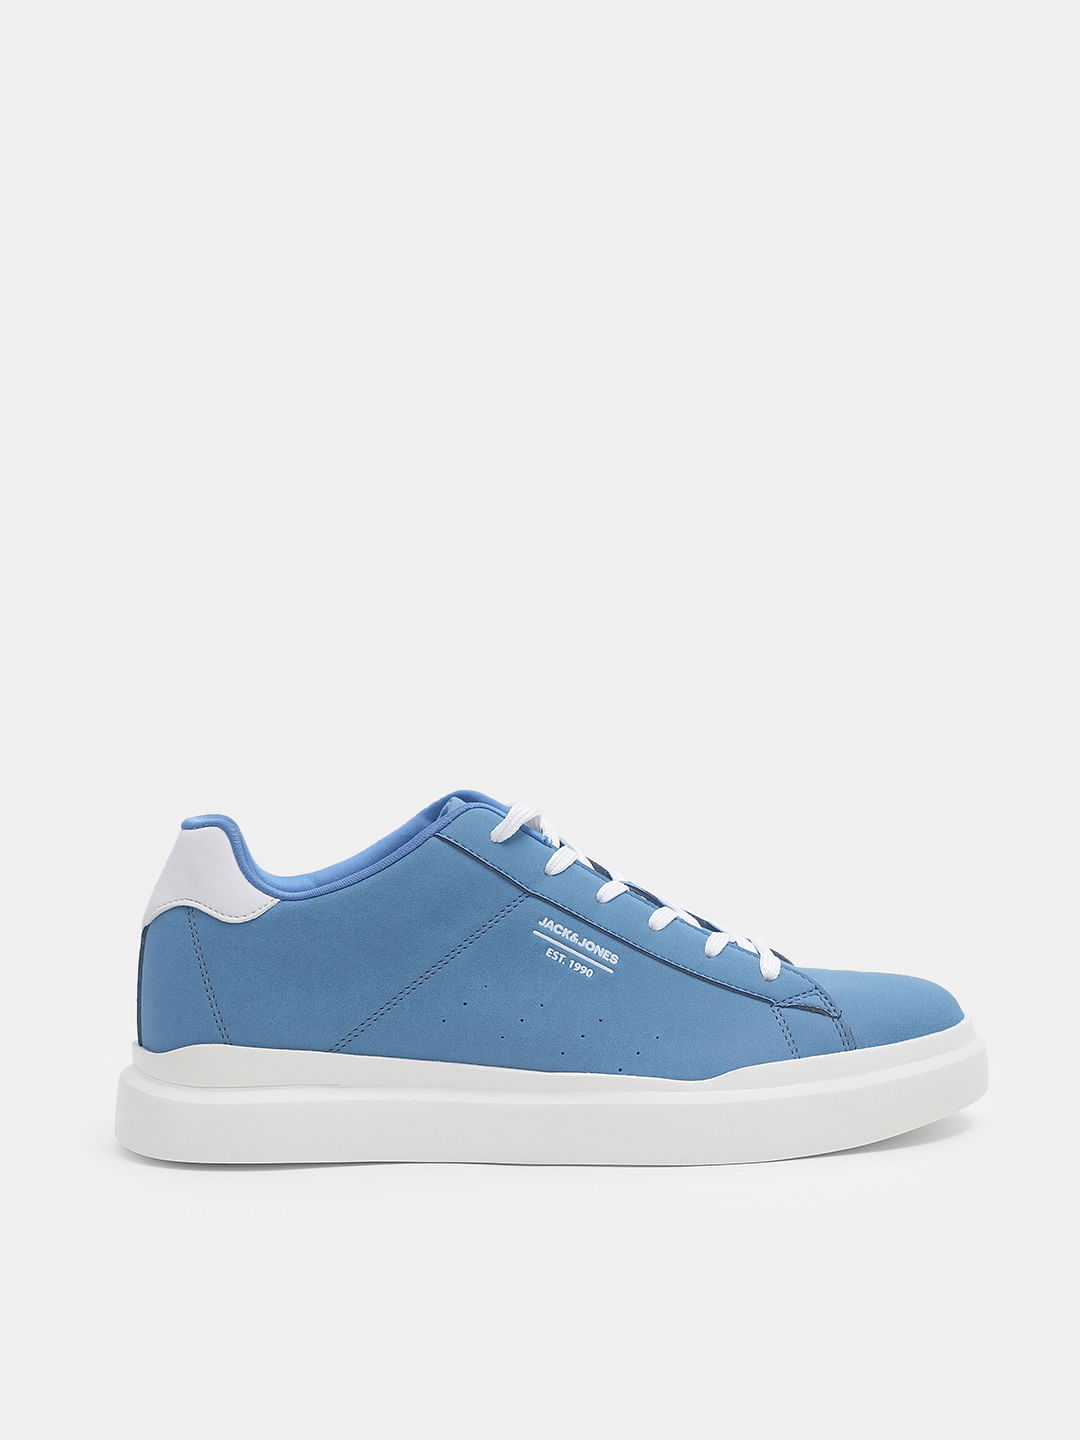 New Balance Shoe Size 10 Light blue Synthetic Solid Sneaker Men's Shoes —  Labels Resale Boutique